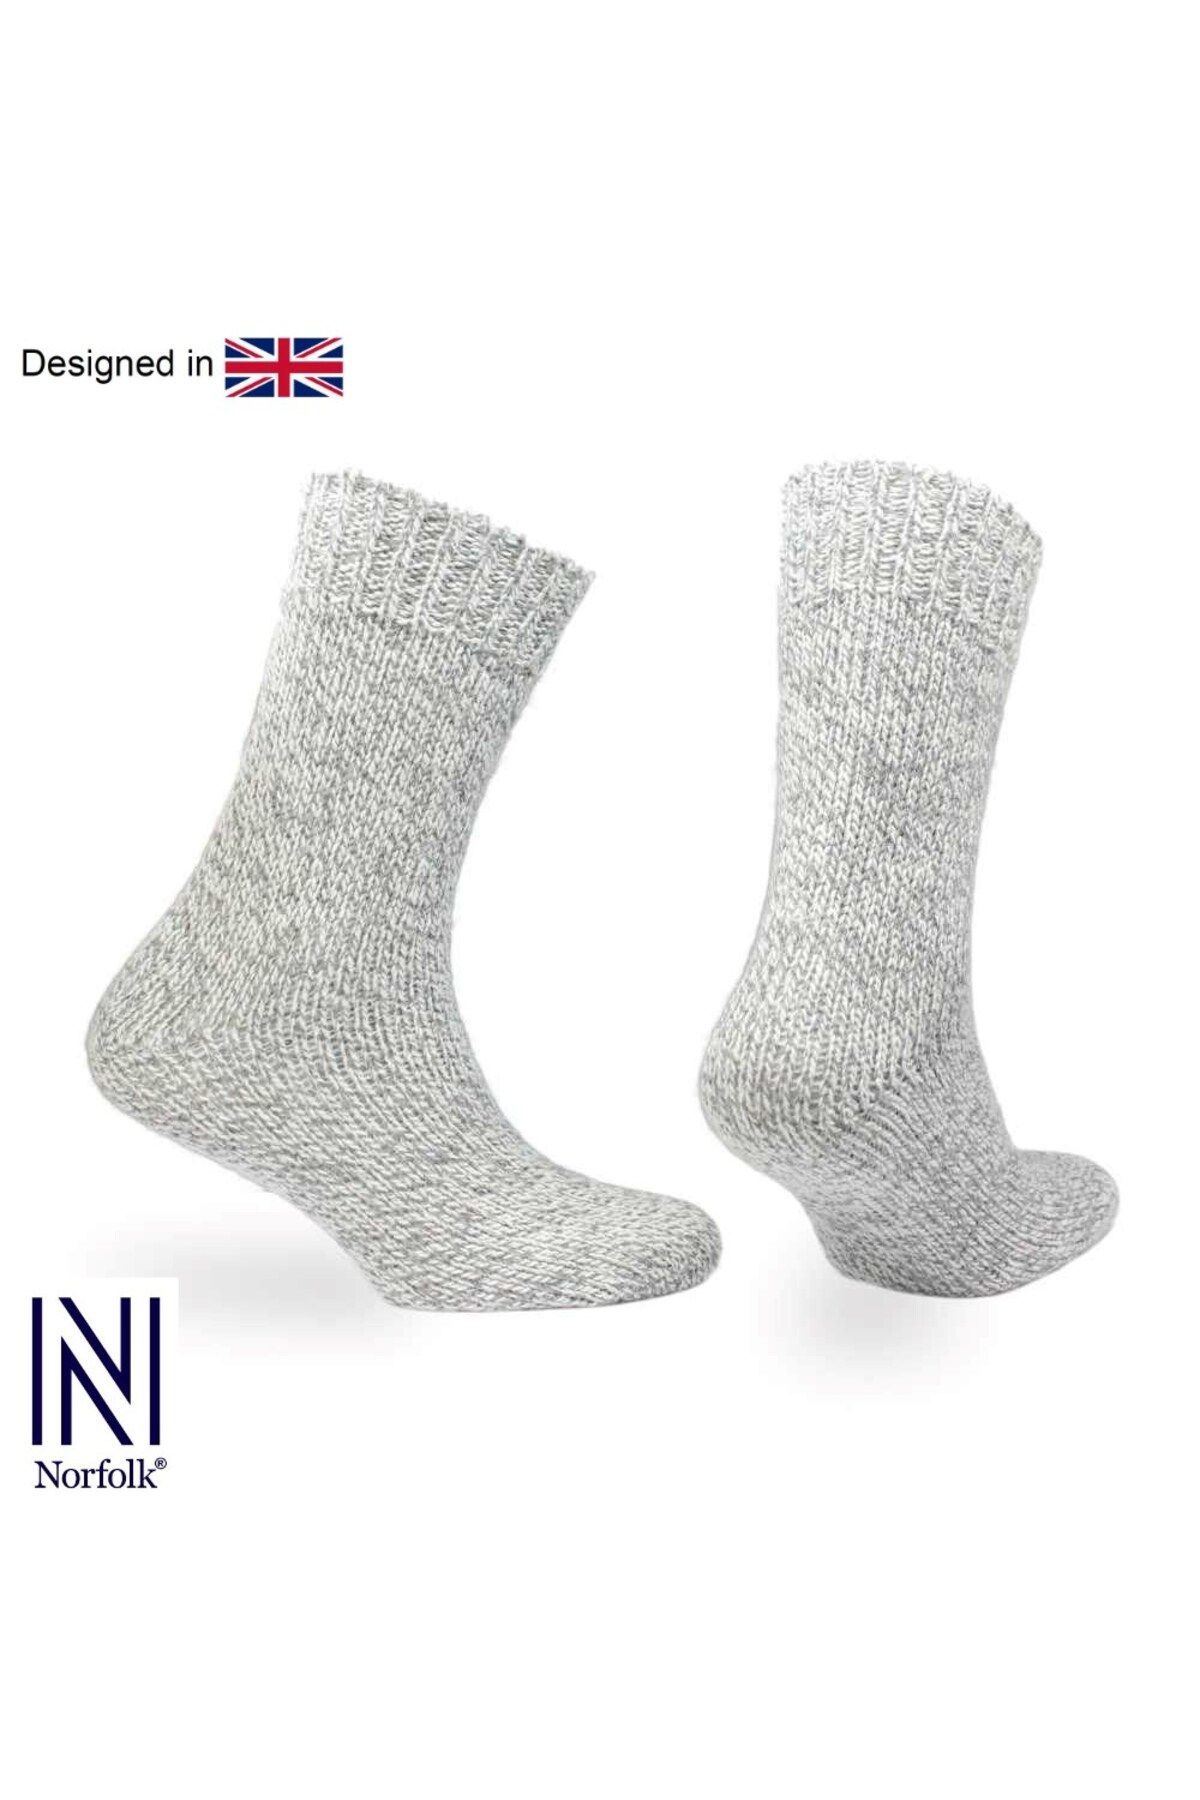 Norfolk Ragg Yün Kışlık Kalın Çorap 3'lü Paket